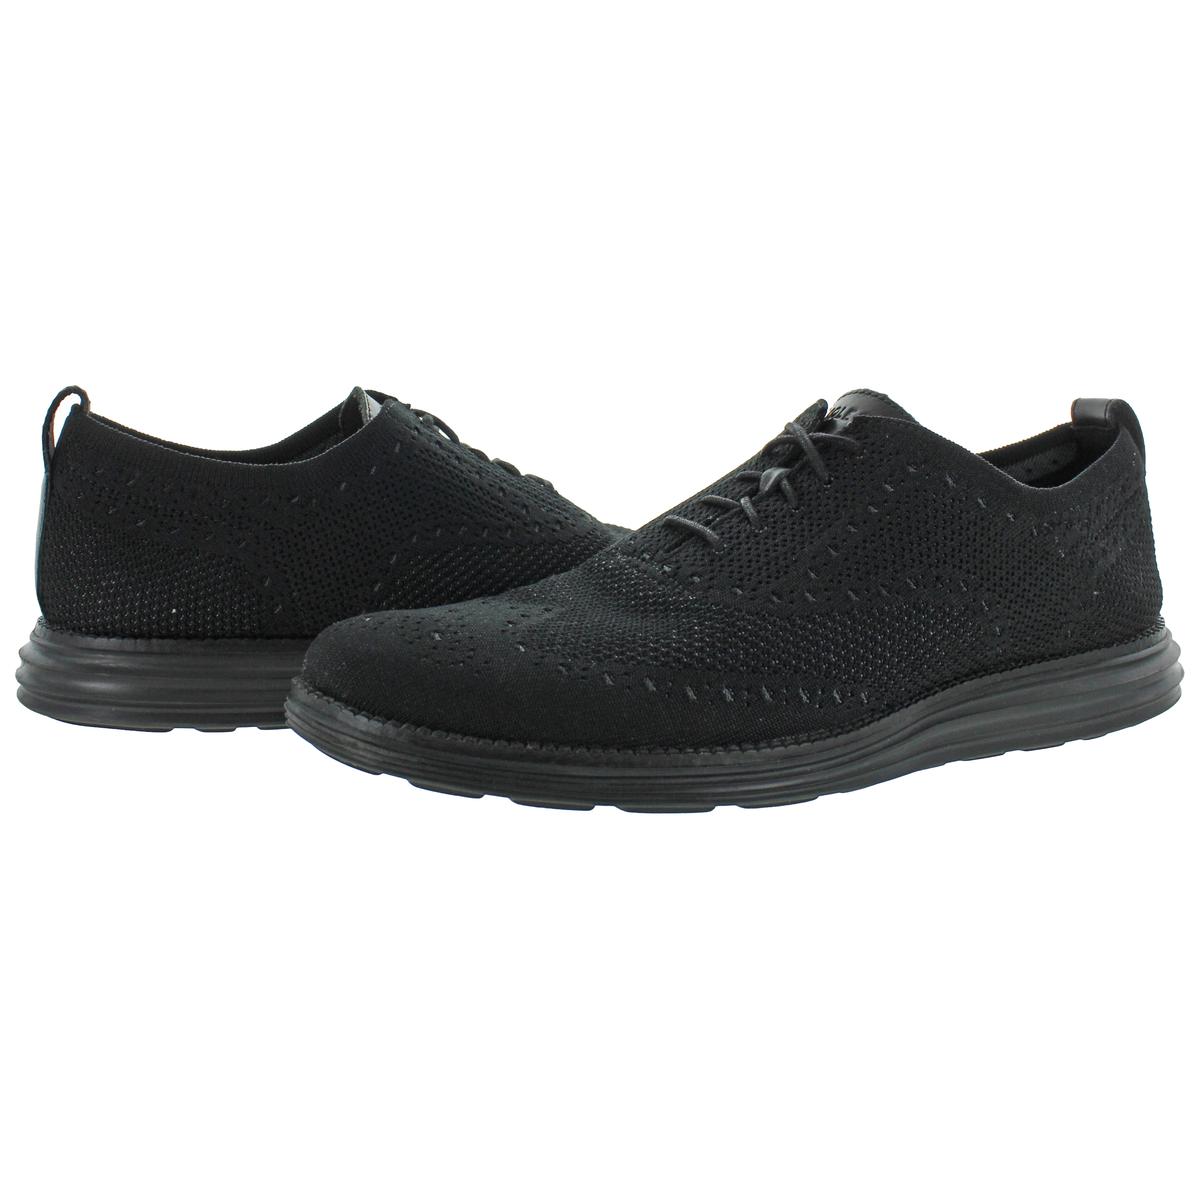 Cole Haan Mens OriginalGrand Black Knit Oxfords Shoes 9 Medium (D) BHFO ...